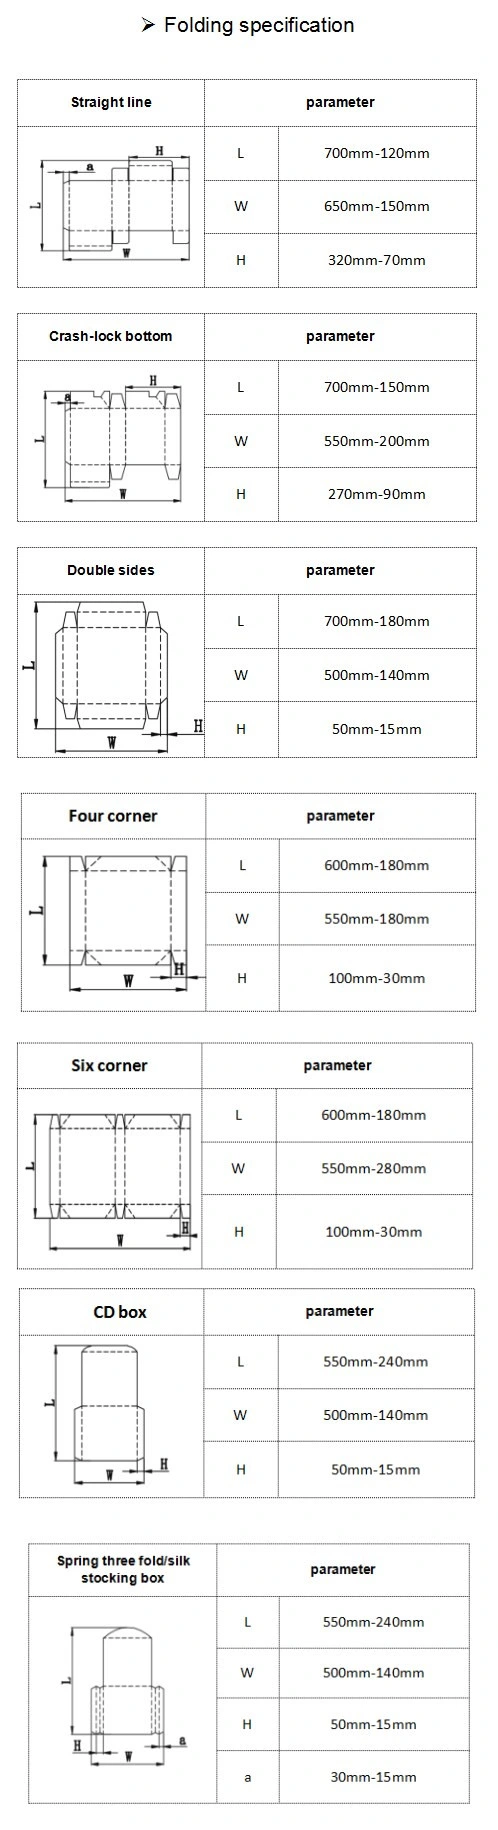 Fully Automatic High Speed Corrugated Cardboard Box Folder Gluer (XCS-650PC-A)